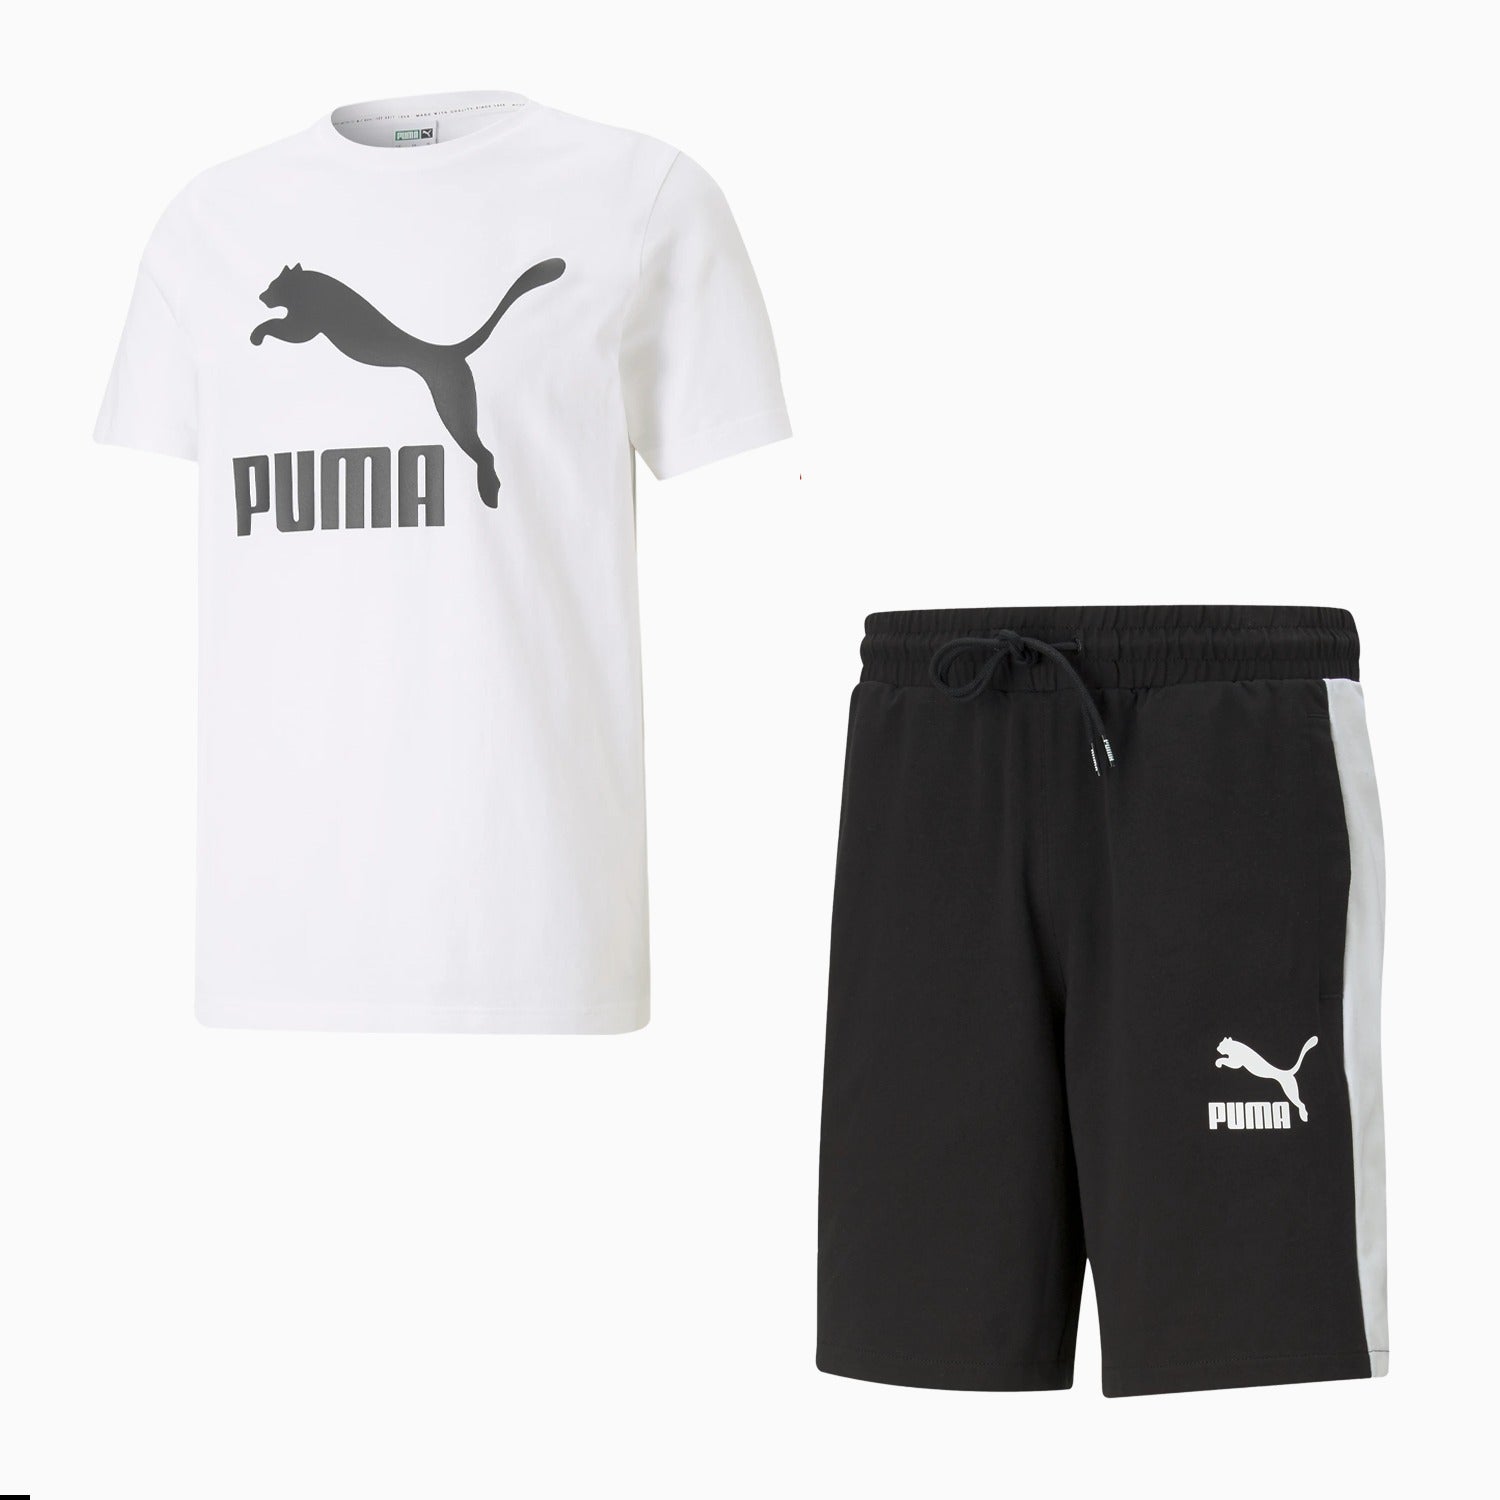 puma-mens-classics-logo-outfit-530088-02-599901-01